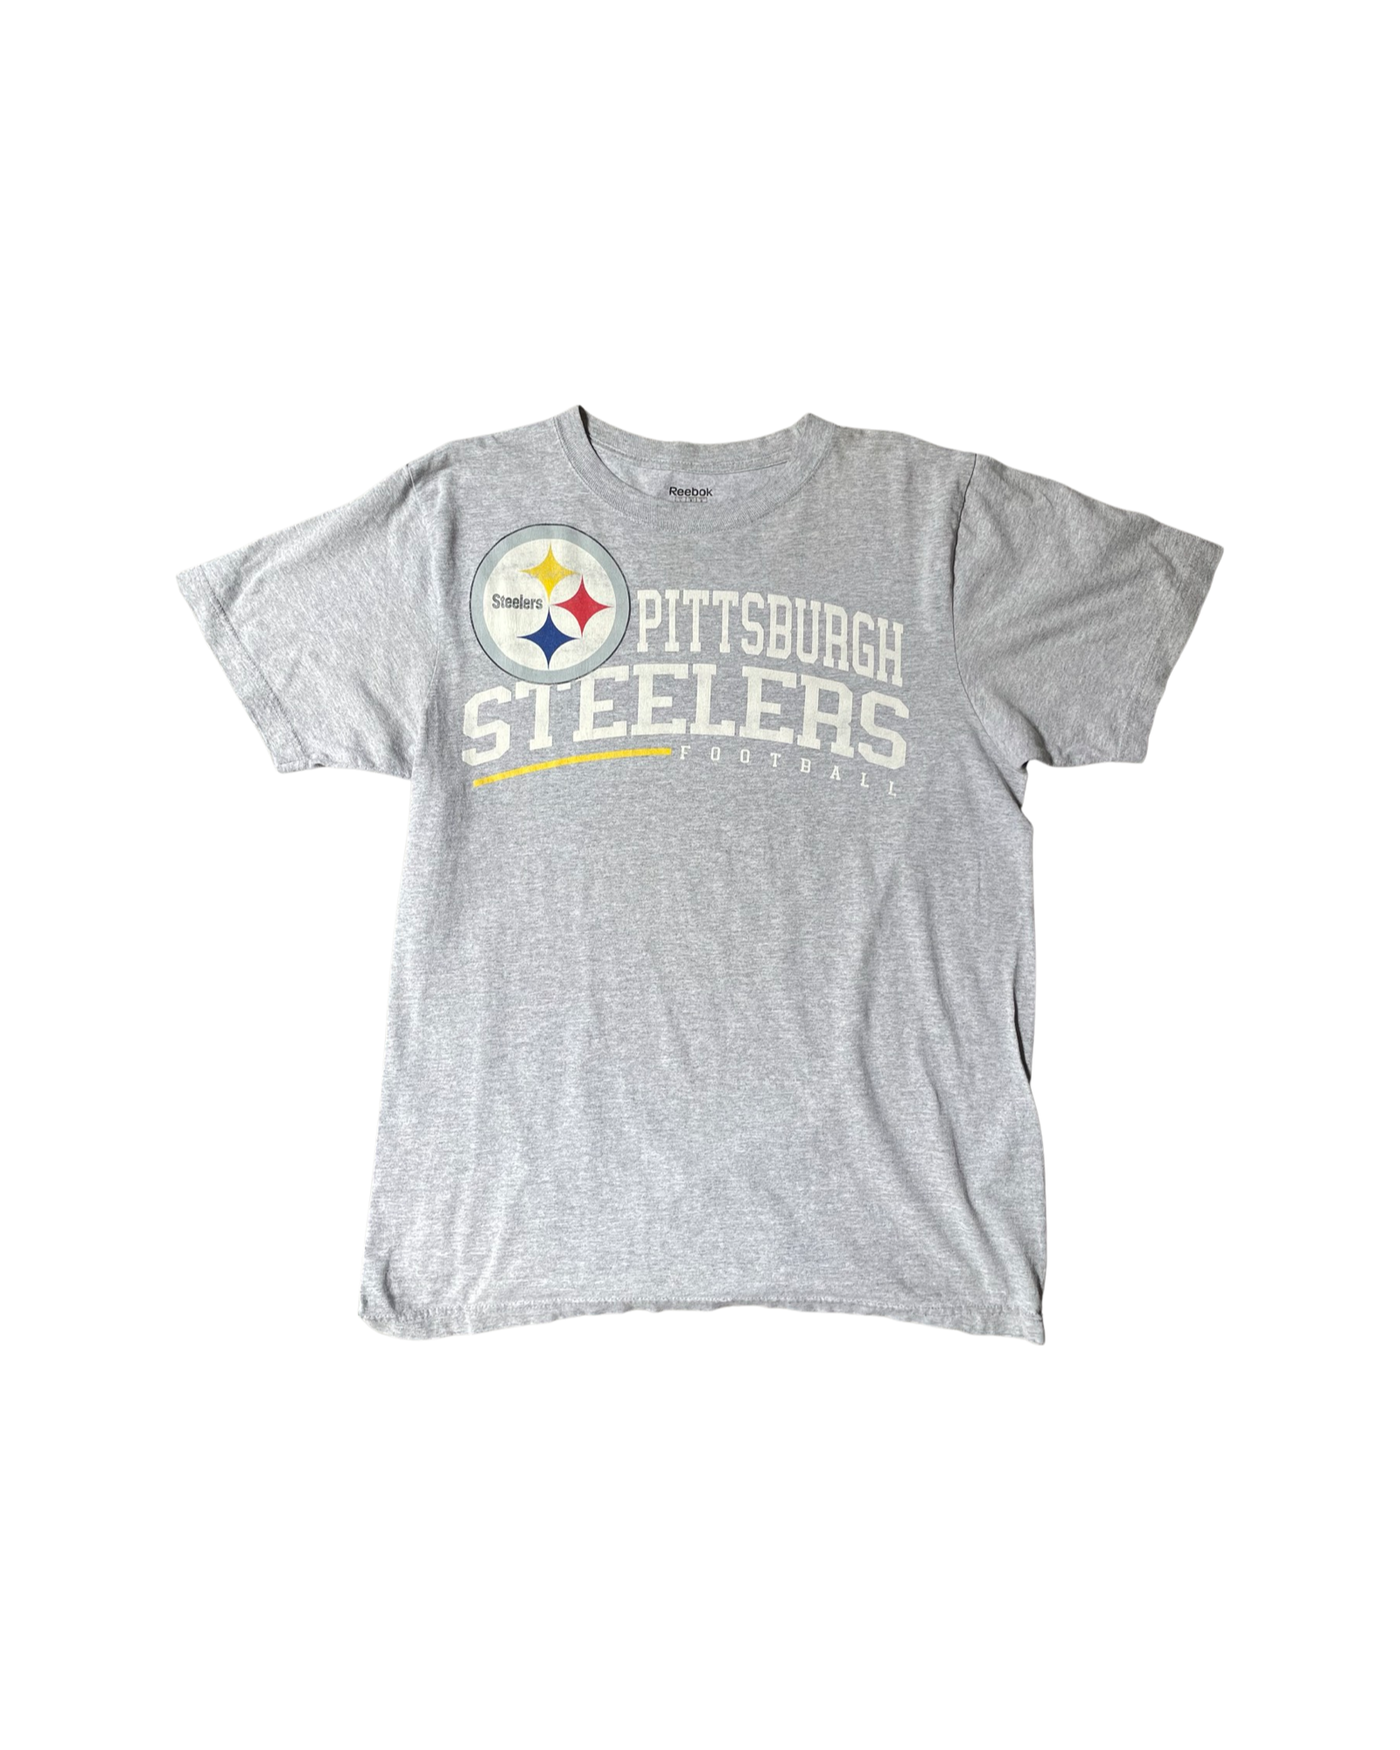 Vintage NFL Steelers T-Shirt